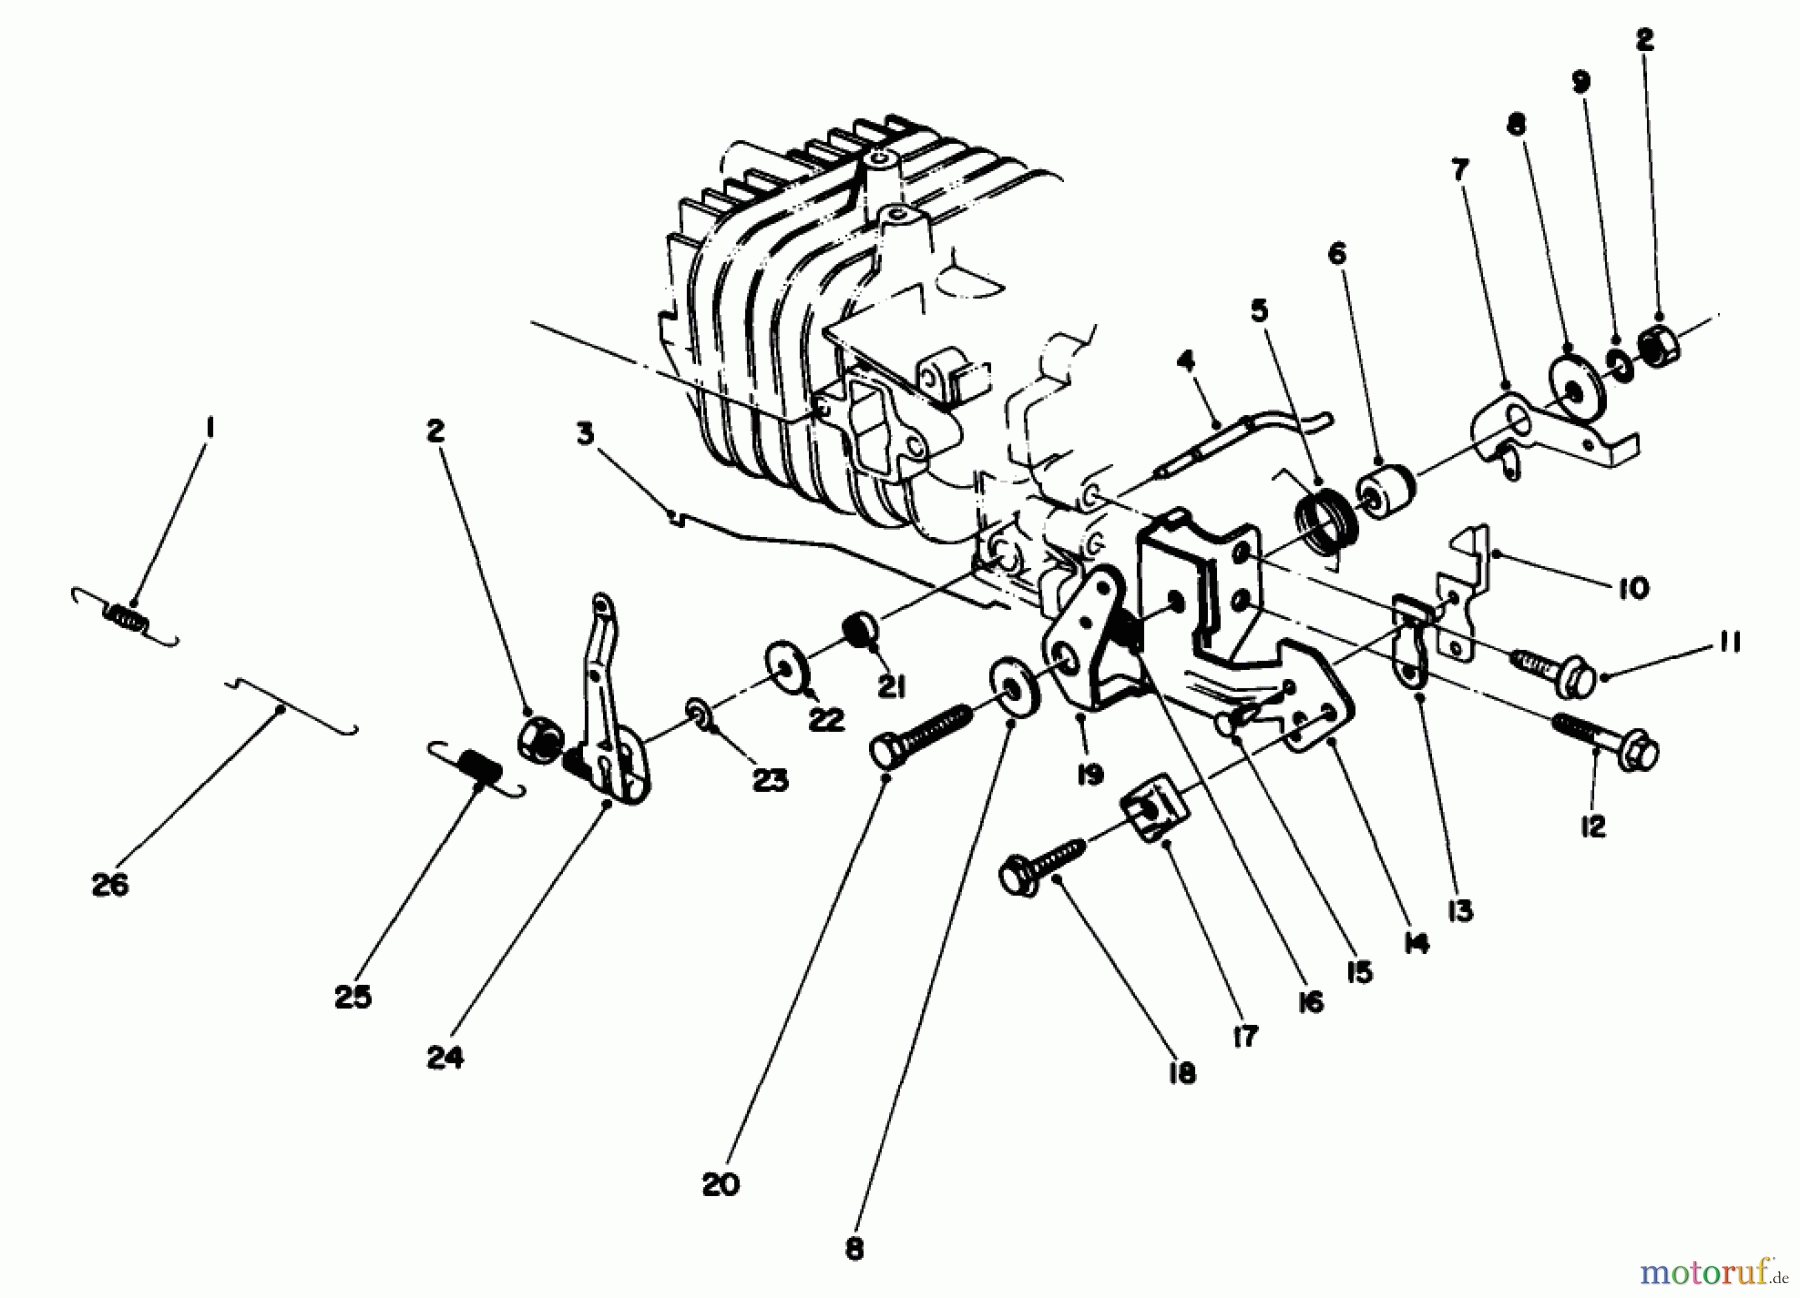  Toro Neu Mowers, Walk-Behind Seite 2 22030 - Toro Lawnmower, 1988 (8000001-8999999) ENGINE ASSEMBLY MODEL NO. 47PH7 #4